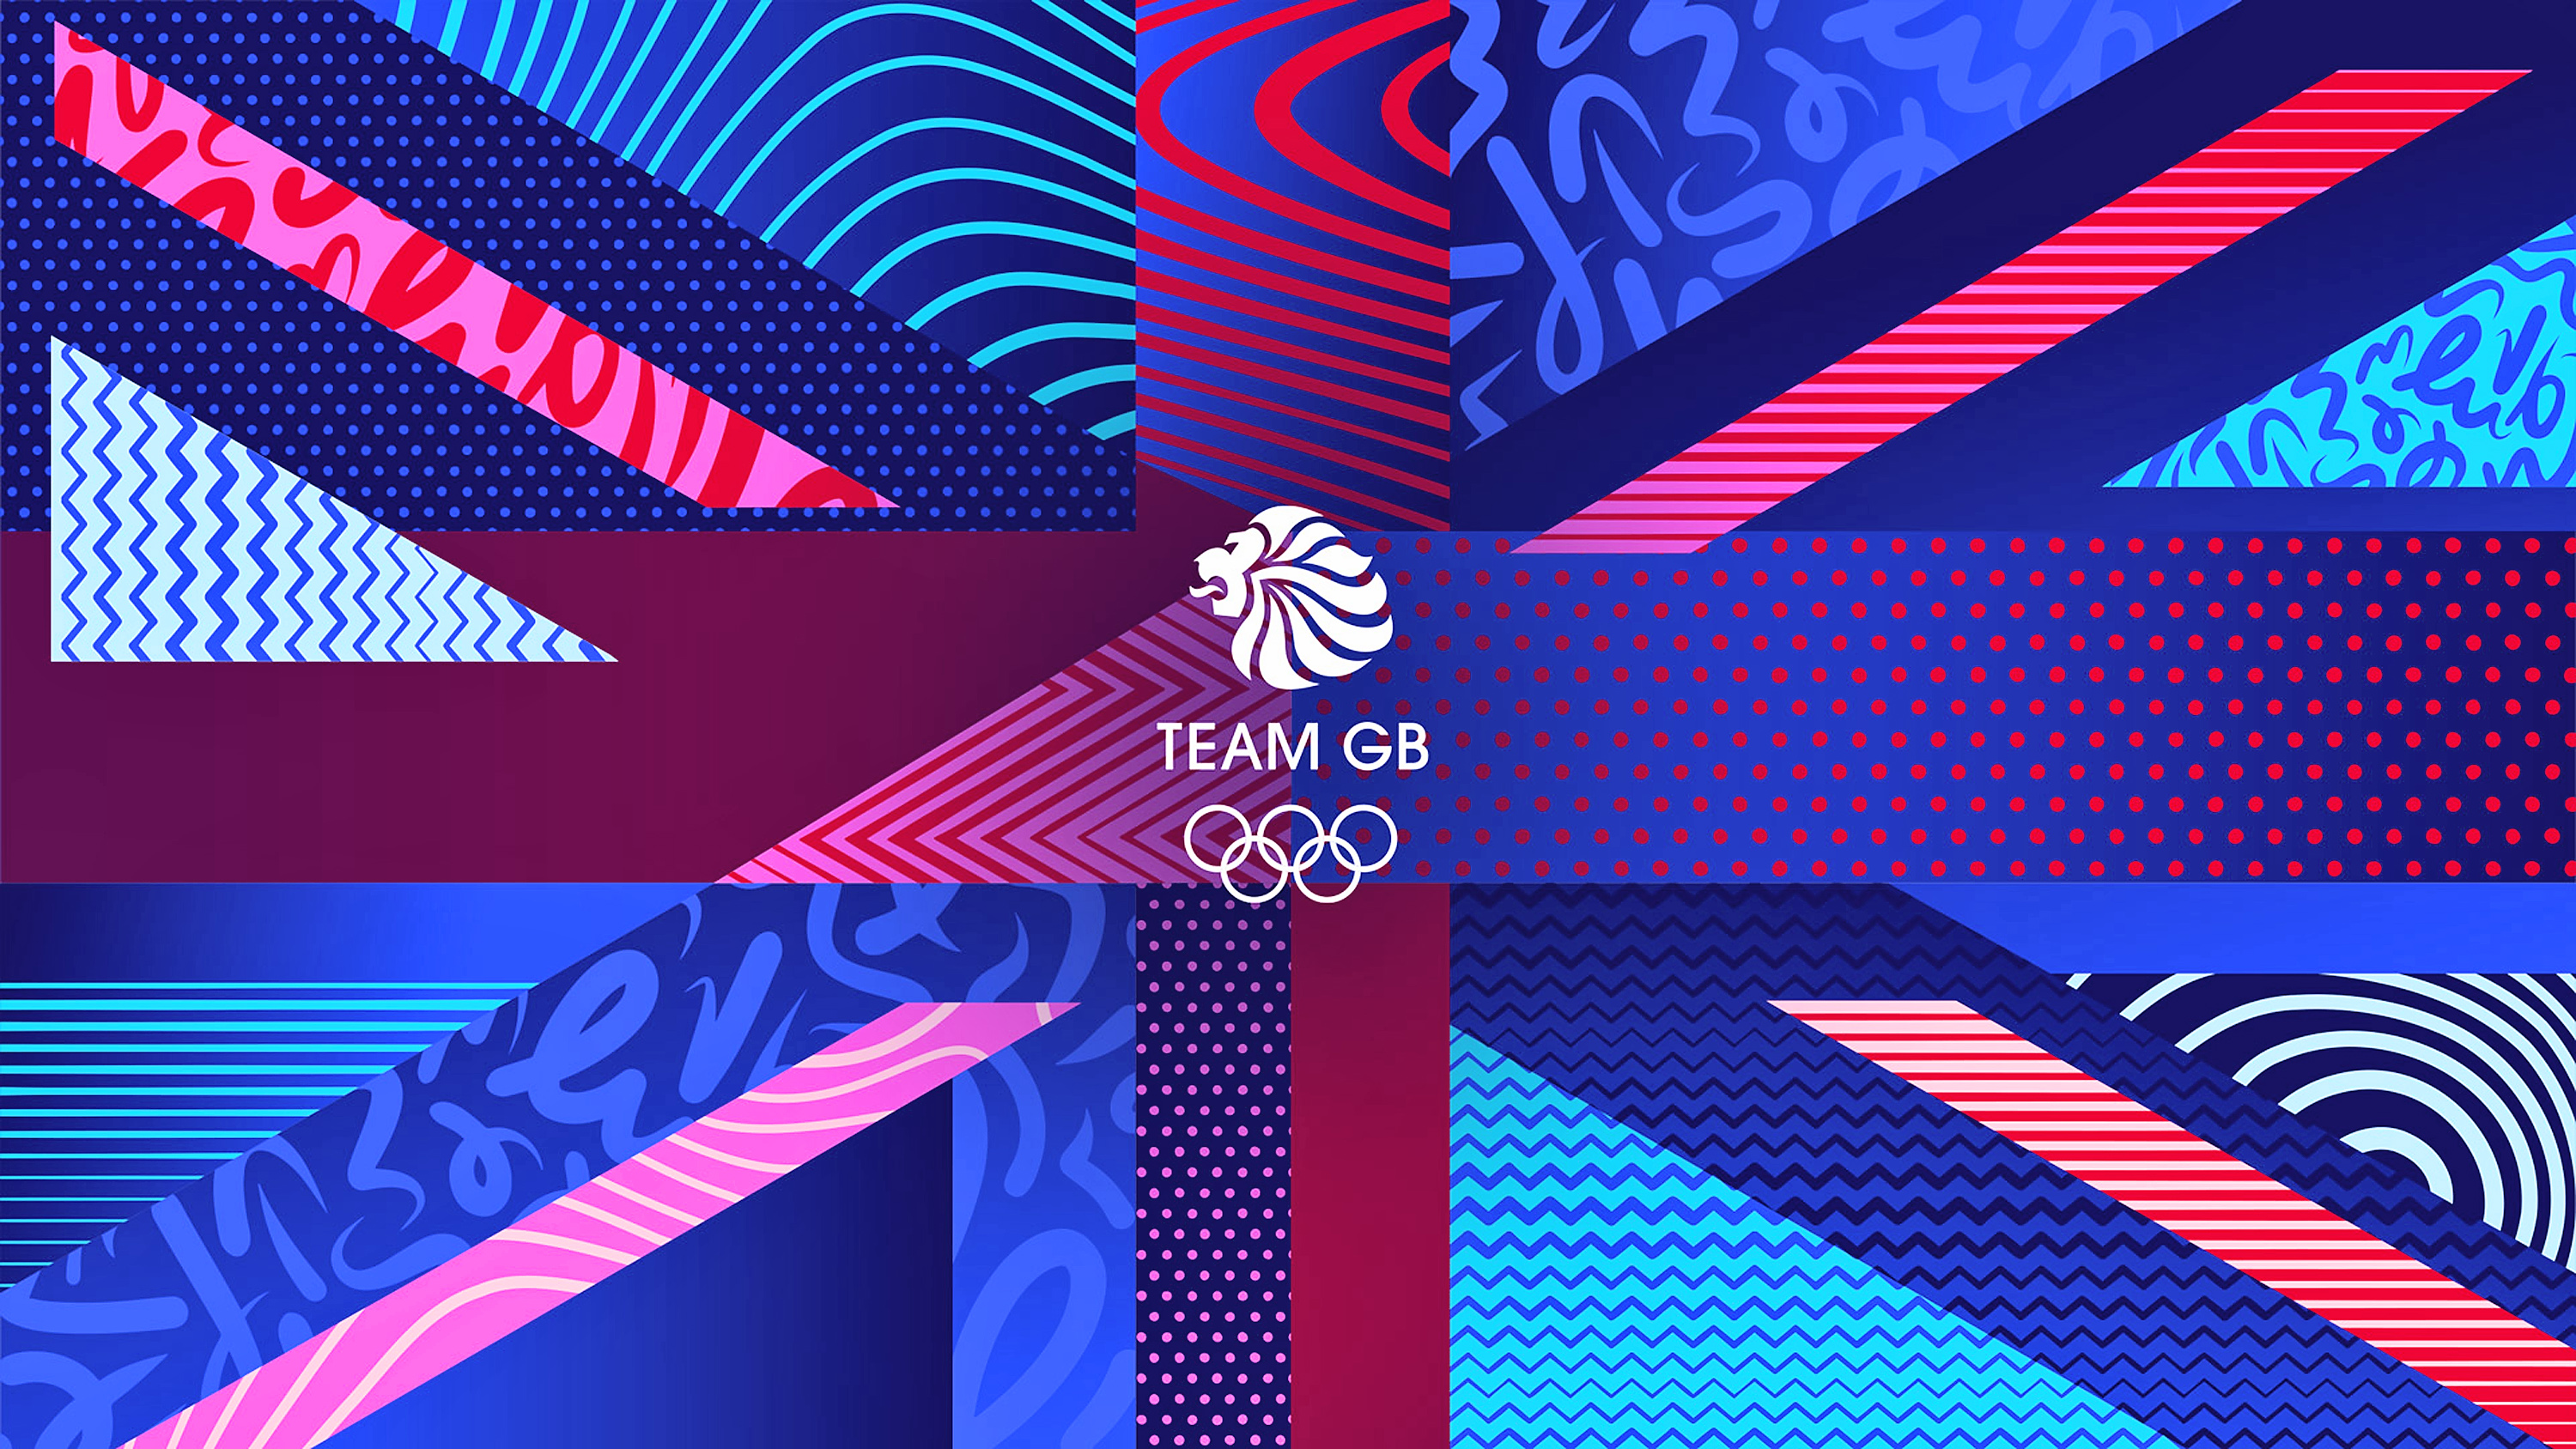 Das neue Design des Team GB Olympics 2024 in Paris